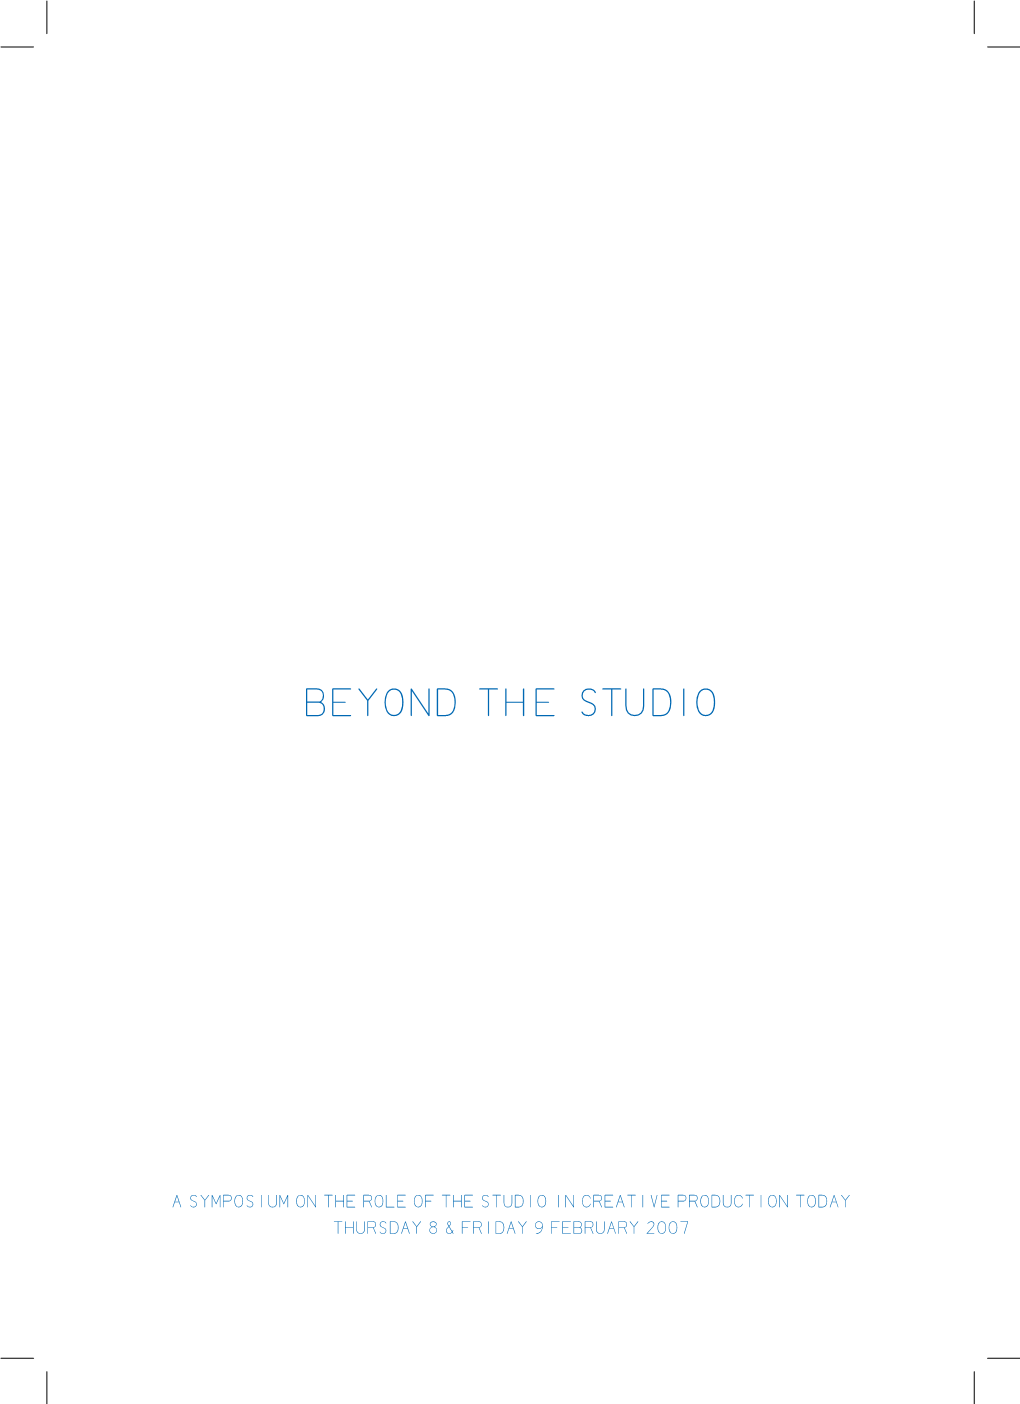 Beyond the Studio Symposium Programme (Pdf)